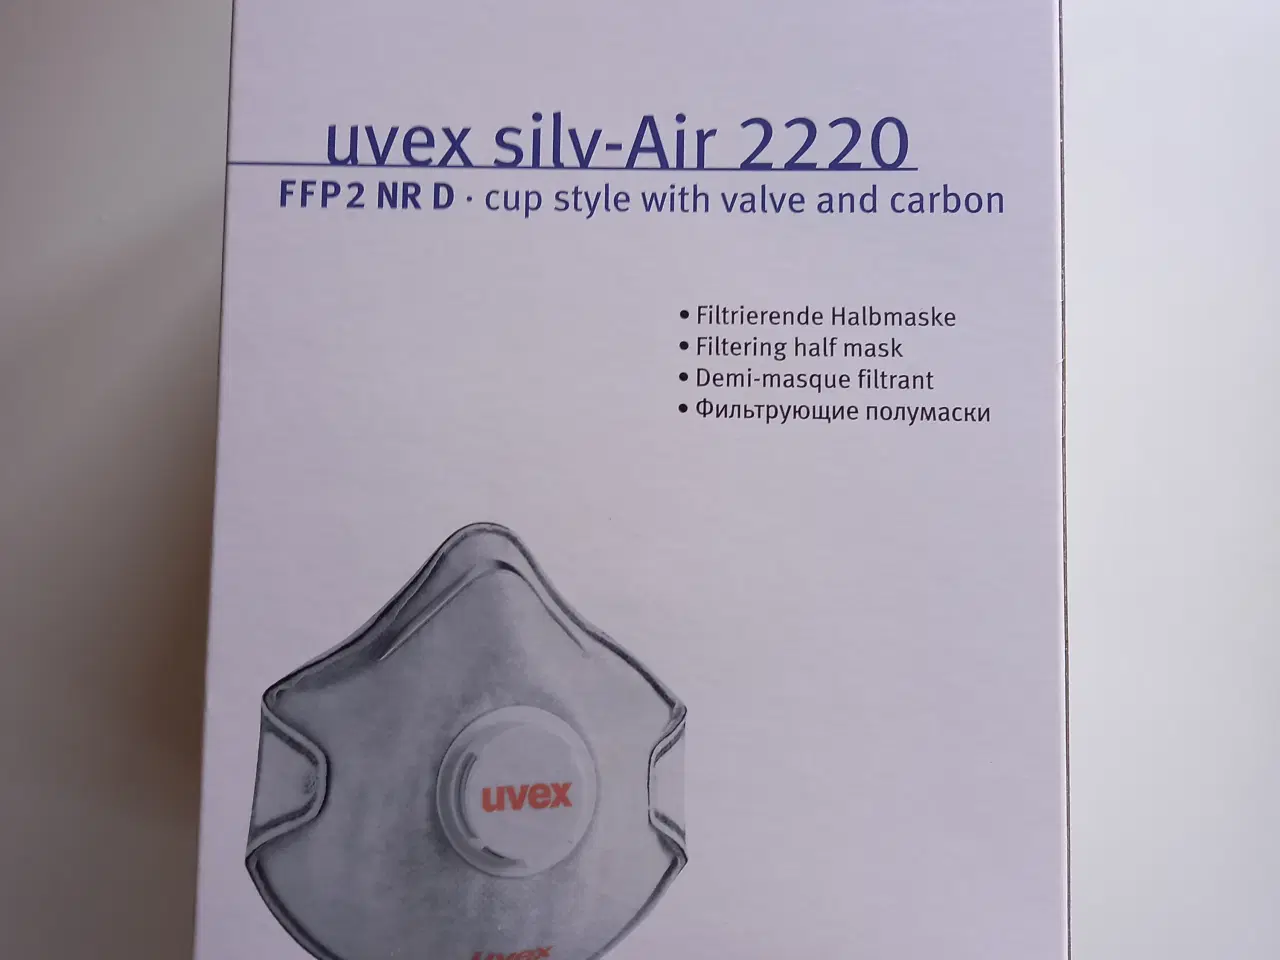 Billede 1 - Støvmasker, UVEX FFP2